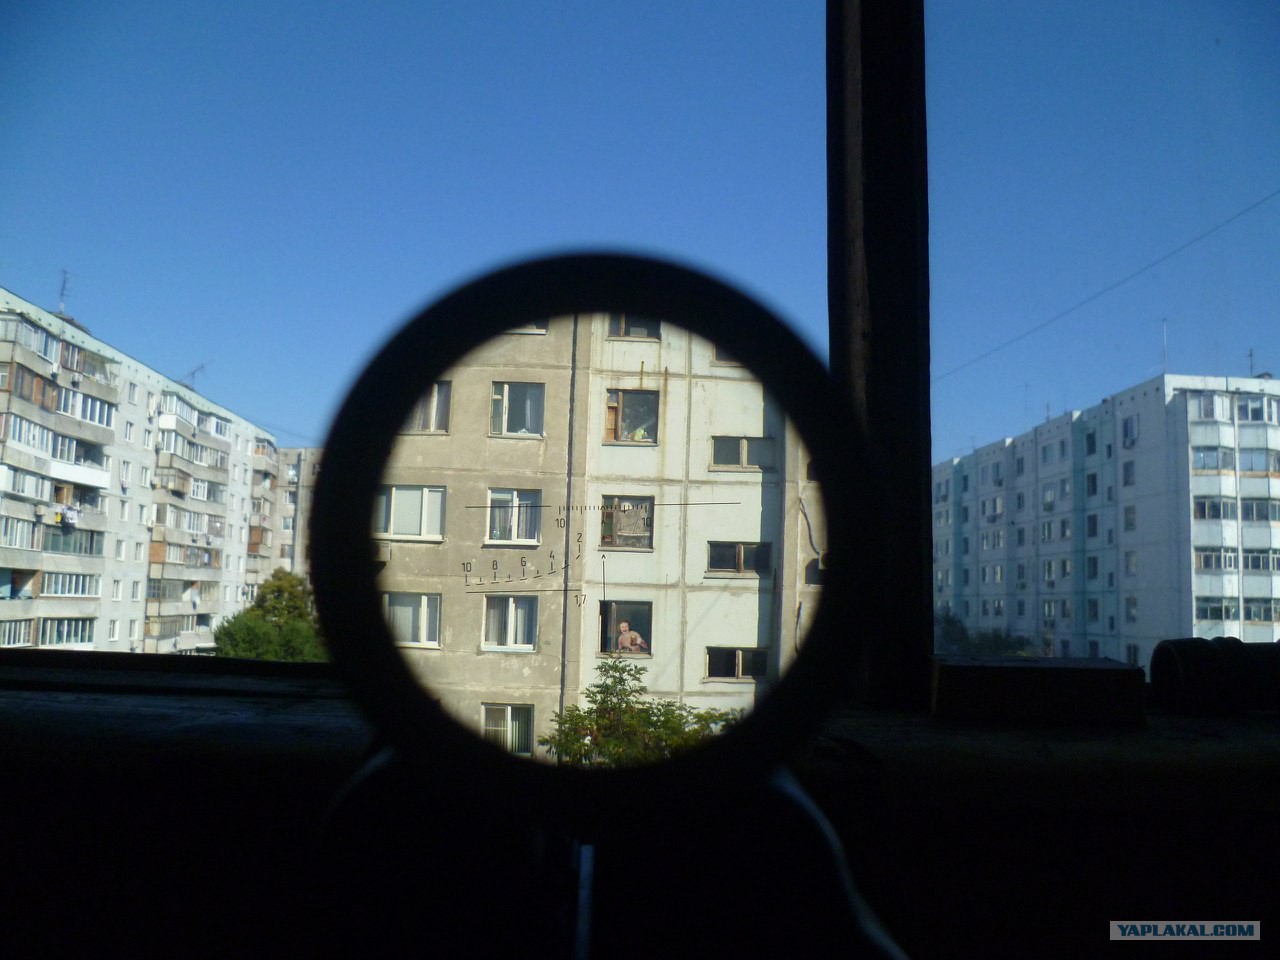 Окно напротив соседи. Окна через бинокль. Наблюдение в окно. Окно в доме напротив. Бинокль подгляд окна.